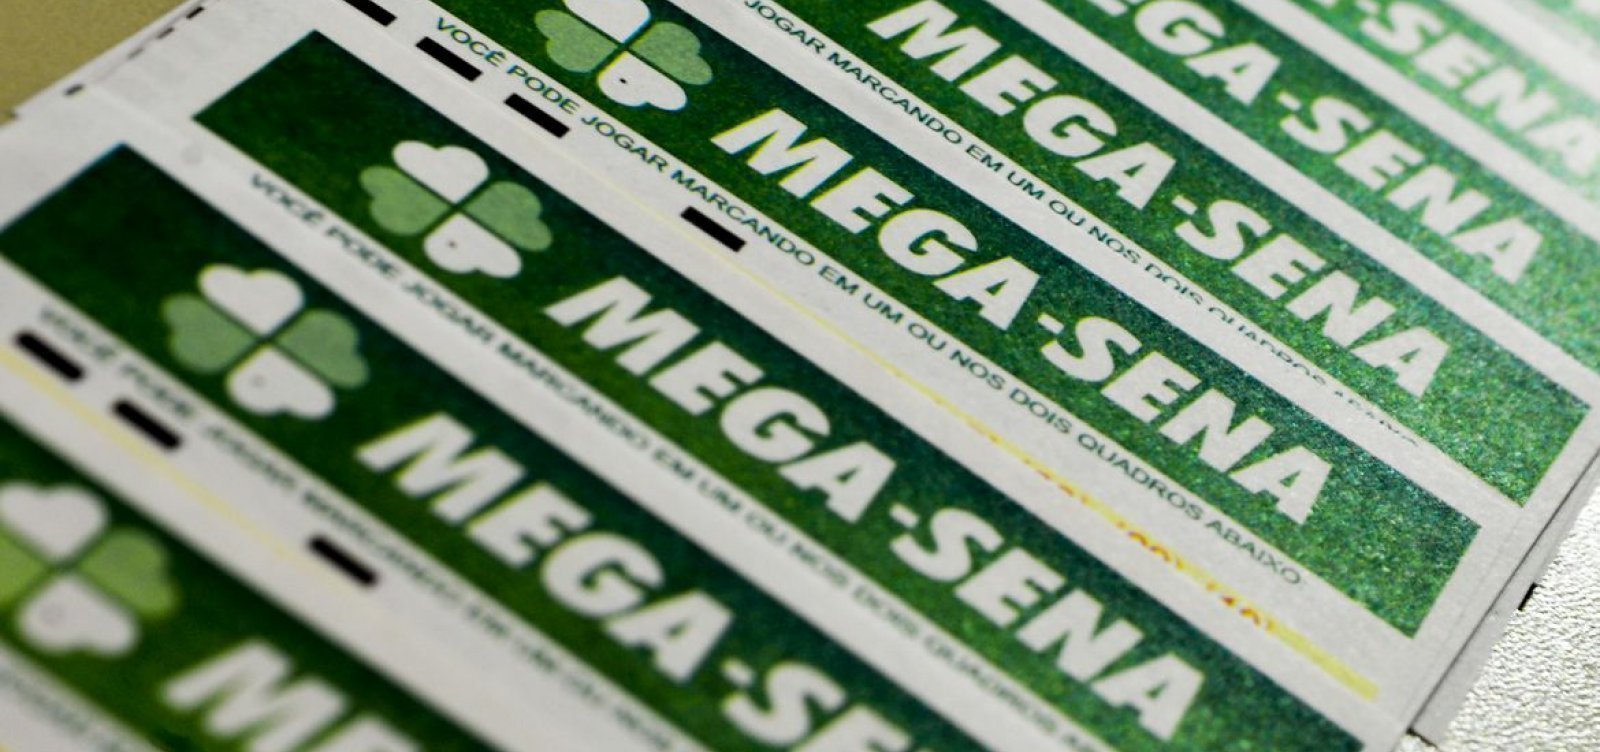 Mega-Sena: ninguém acerta as seis dezenas e prêmio acumula em R$ 115 mihões